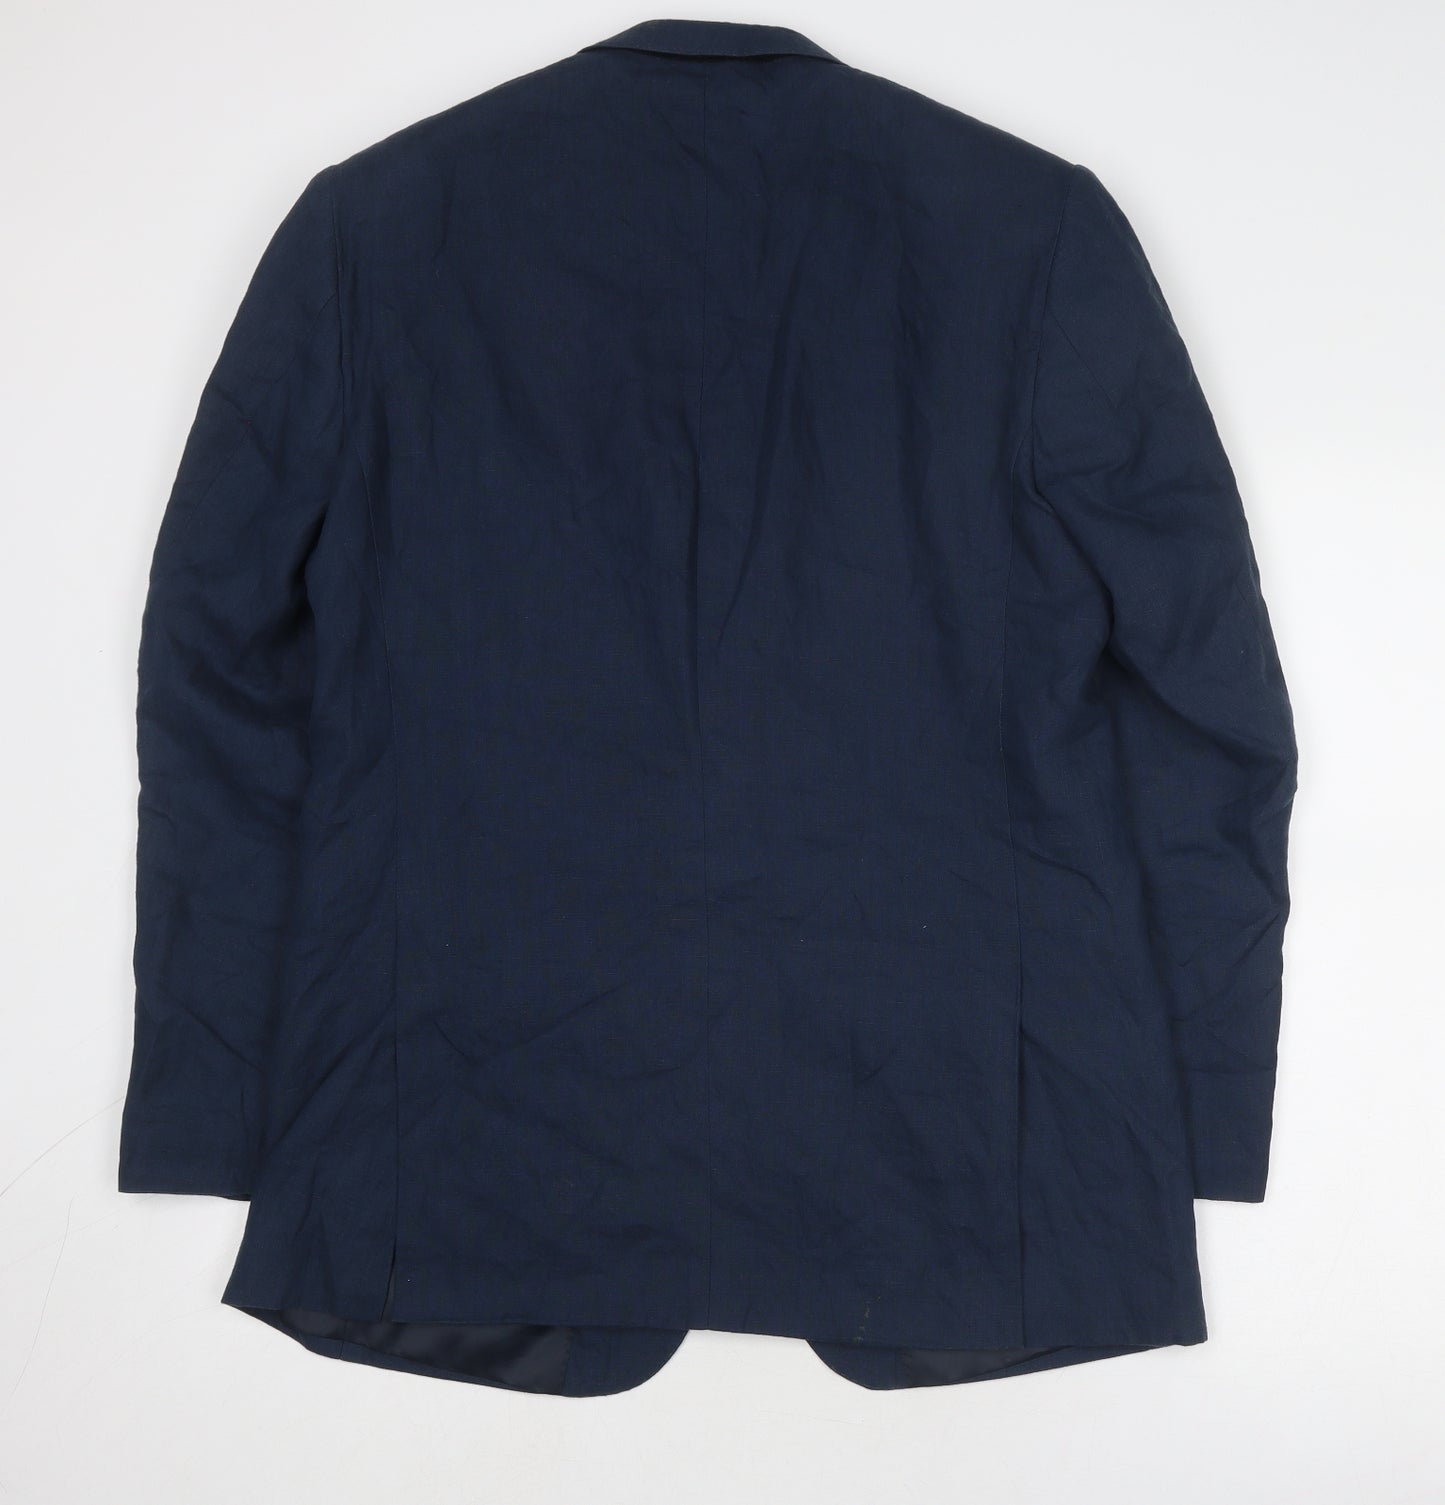 Emilio Corali Mens Blue Linen Jacket Suit Jacket Size 38 Regular